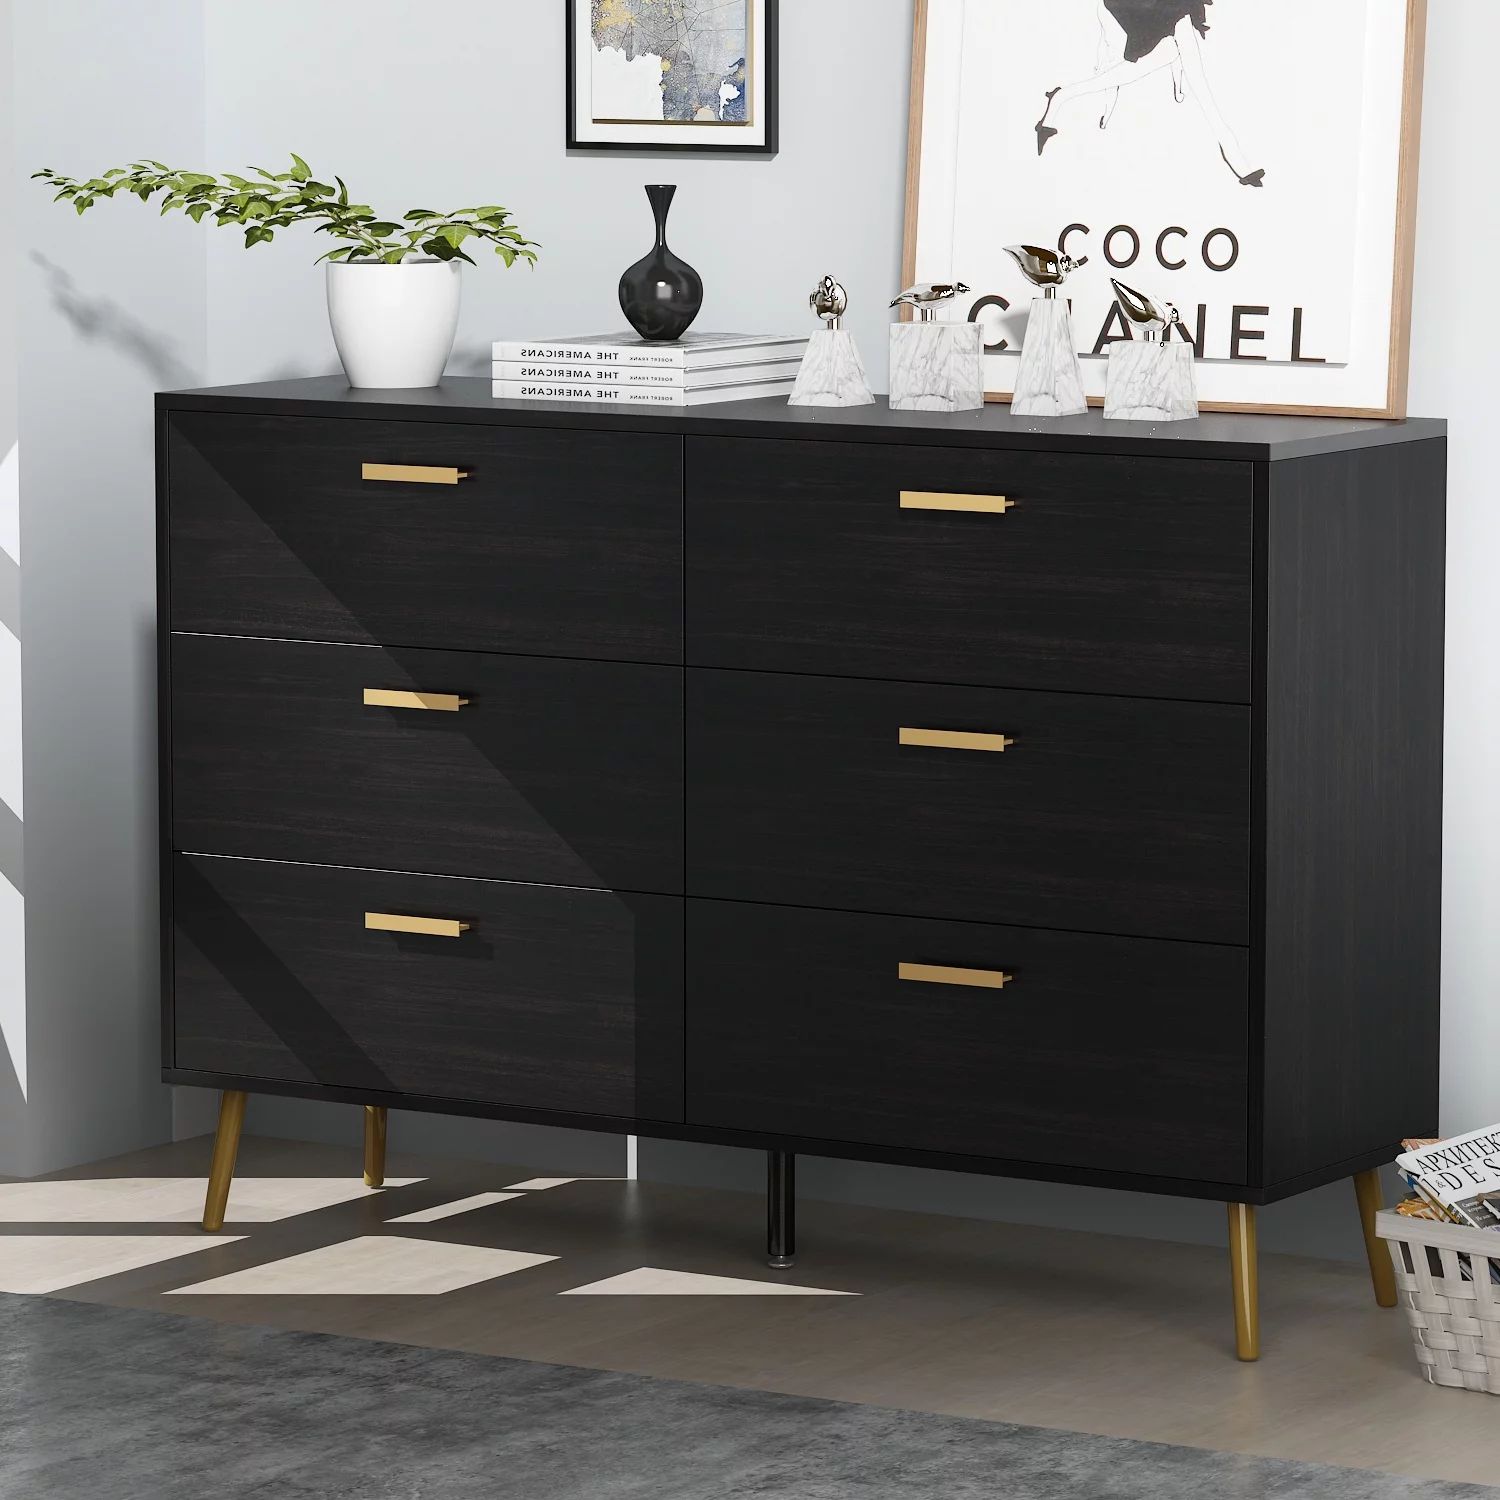 Erkang 6 Drawer Wooden Dresser Chest for Bedroom Living Room Sideboard Cabinet Black 54" - Walmar... | Walmart (US)